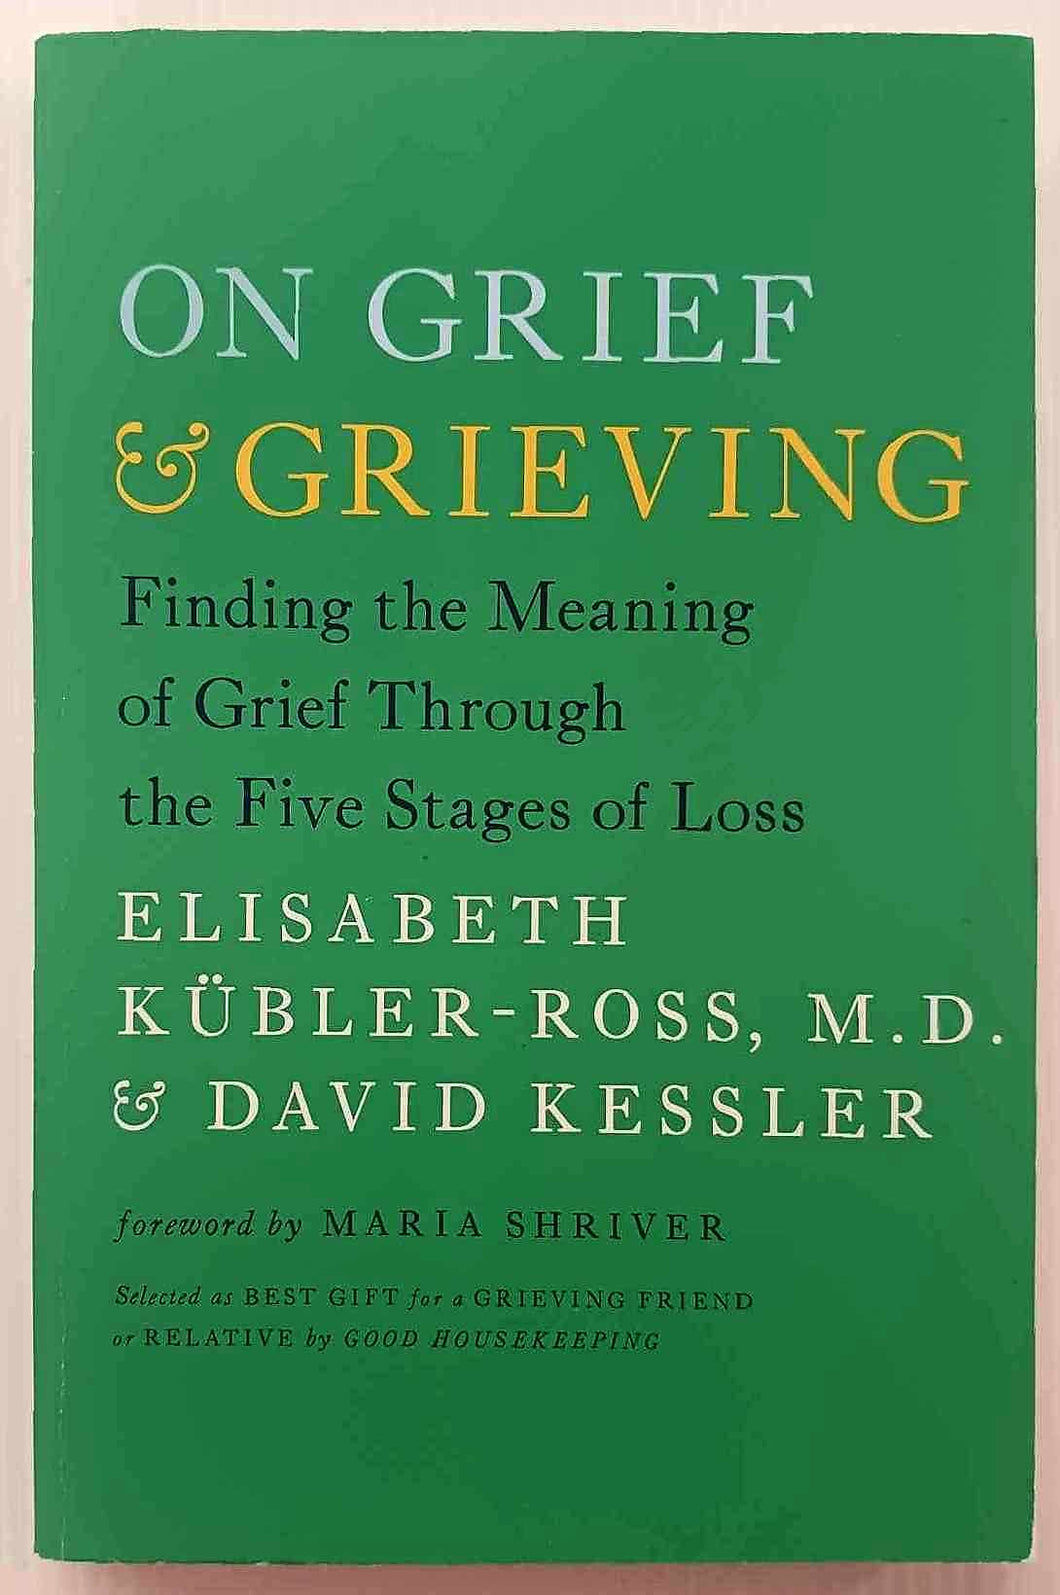 ON GRIEF & GRIEVING - Elisabeth Kubler-Ross, David Kessler